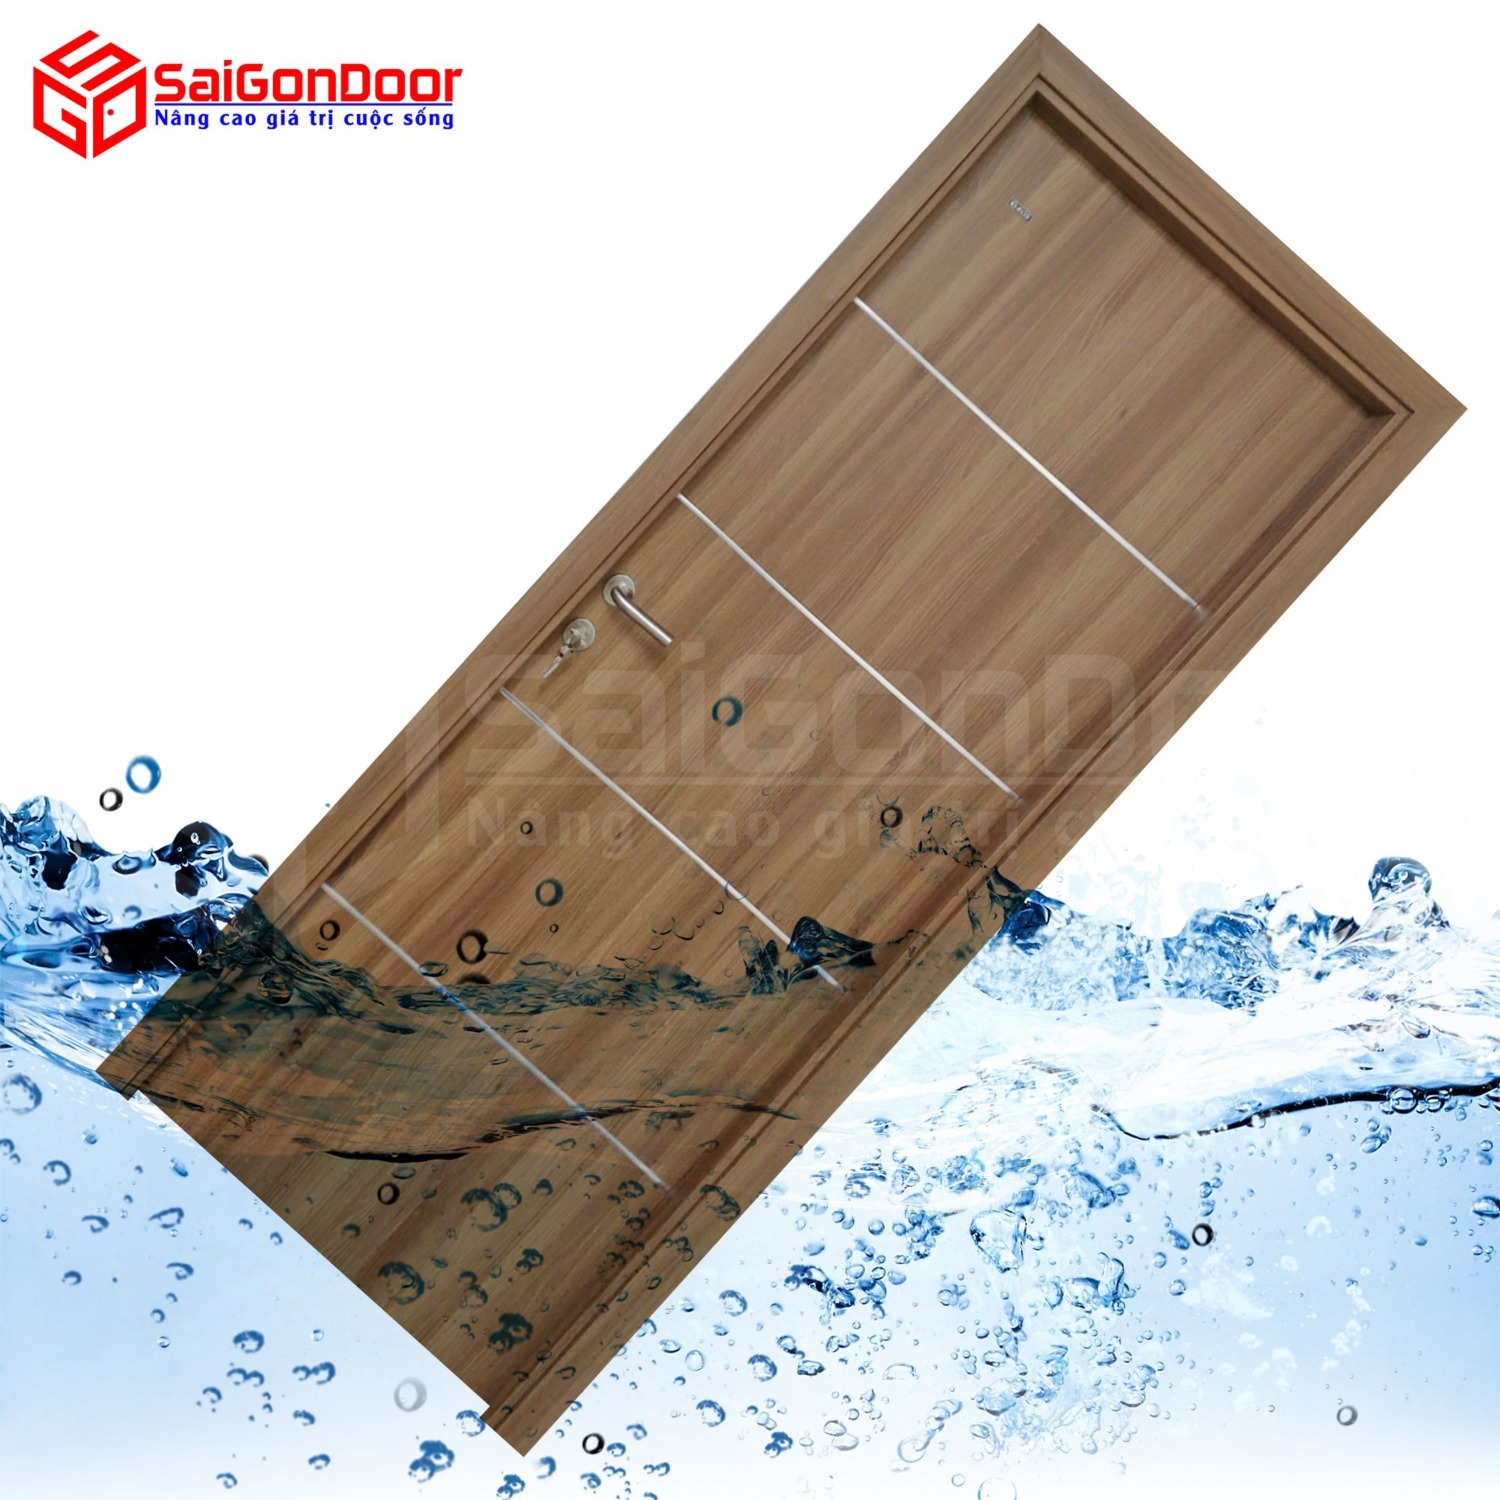 Khả năng chống nước, cách nhiệt và cách âm tốt nên cửa thường được dùng làm cửa thông phòng, cửa nhà vệ sinh, cửa phòng ngủ